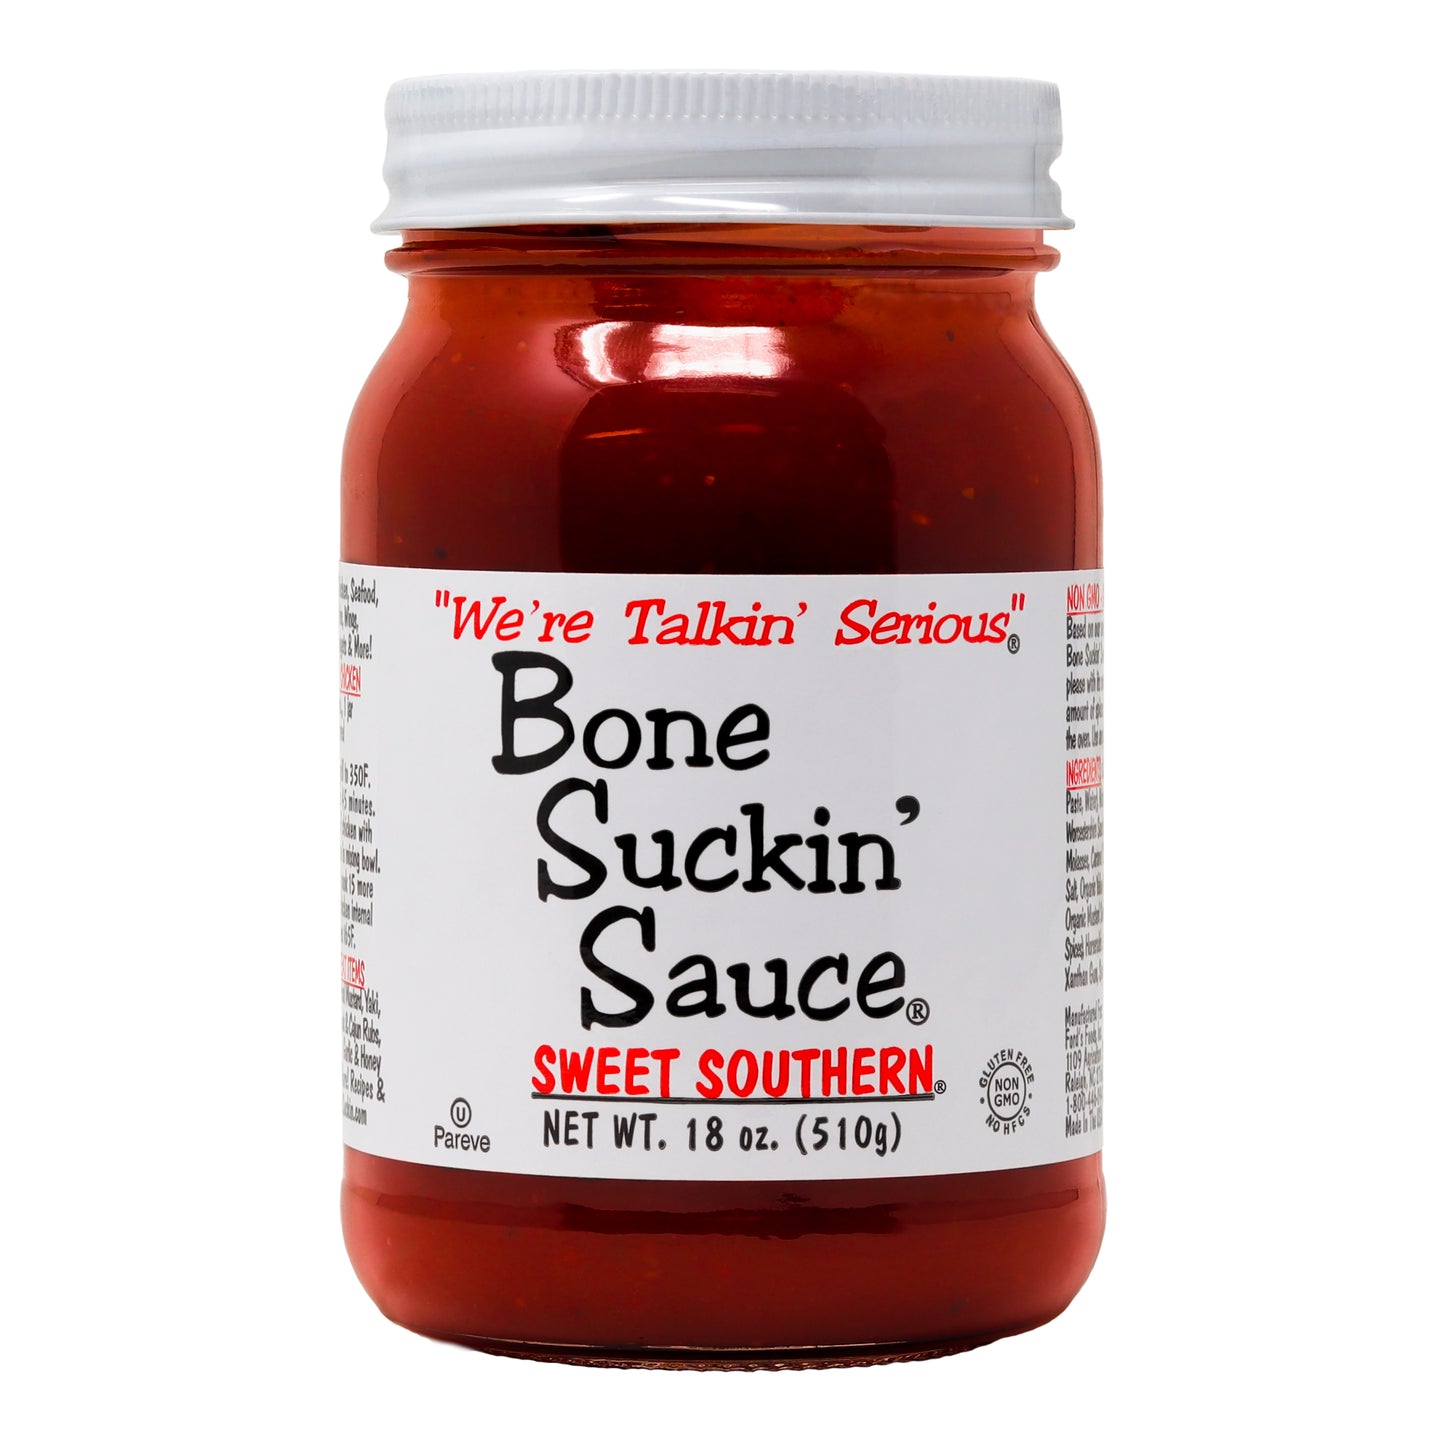 Bone Suckin' Sauce® Sweet Southern®, 18.oz.